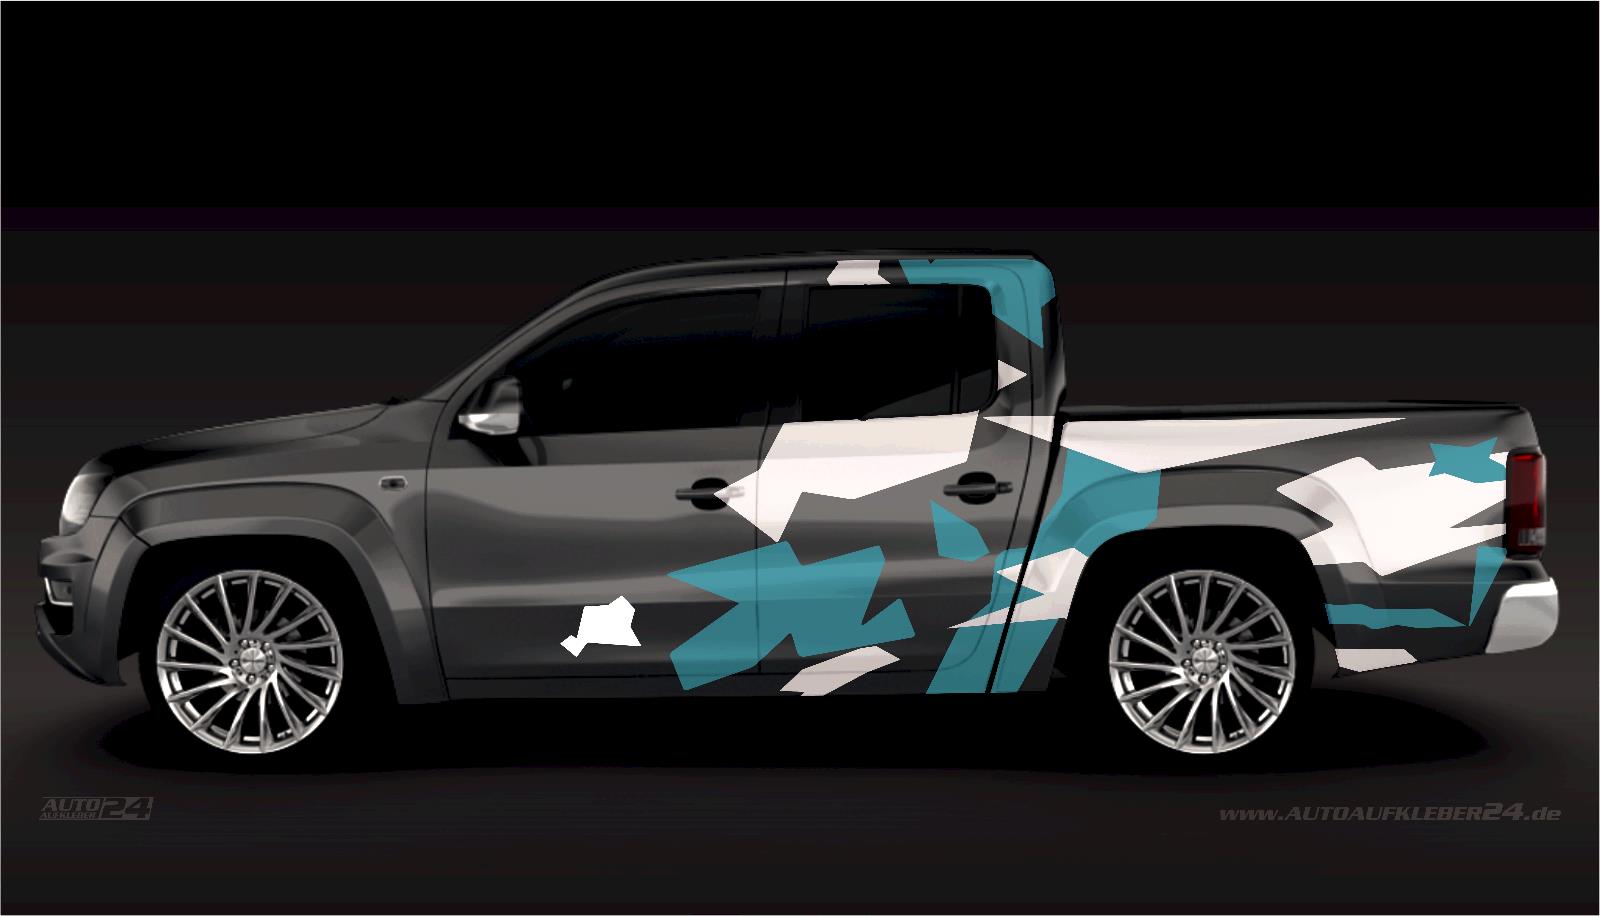 Camouflage Stealth Design - Aufkleber / Seitenaufkleber / Autoaufkleber SUV Volkswagen VW Amarok,